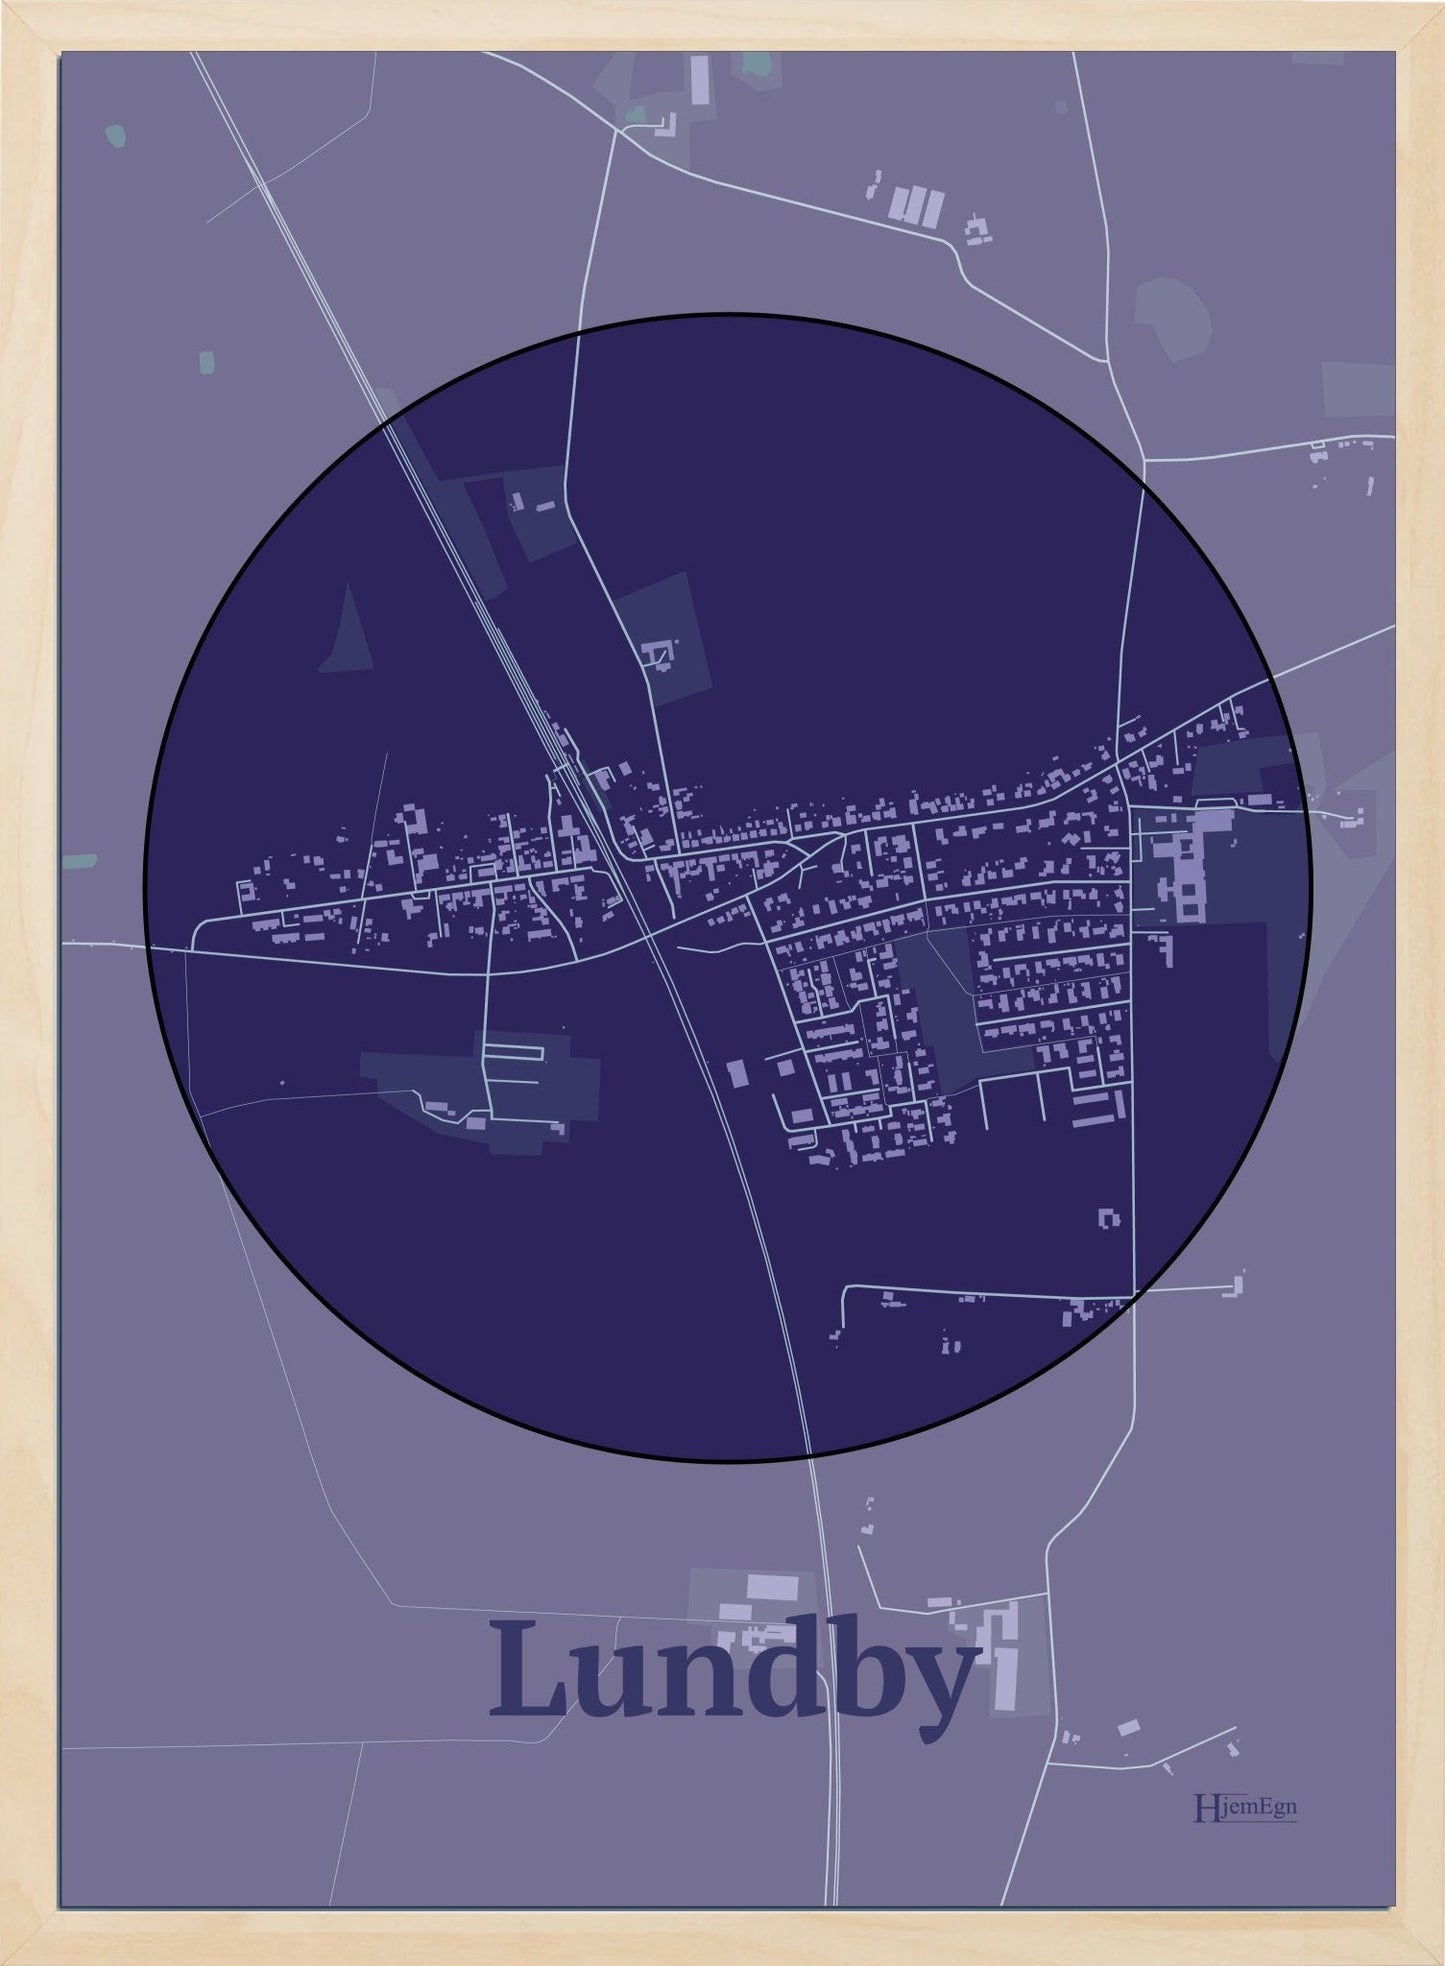 Lundby plakat i farve mørk lilla og HjemEgn.dk design centrum. Design bykort for Lundby